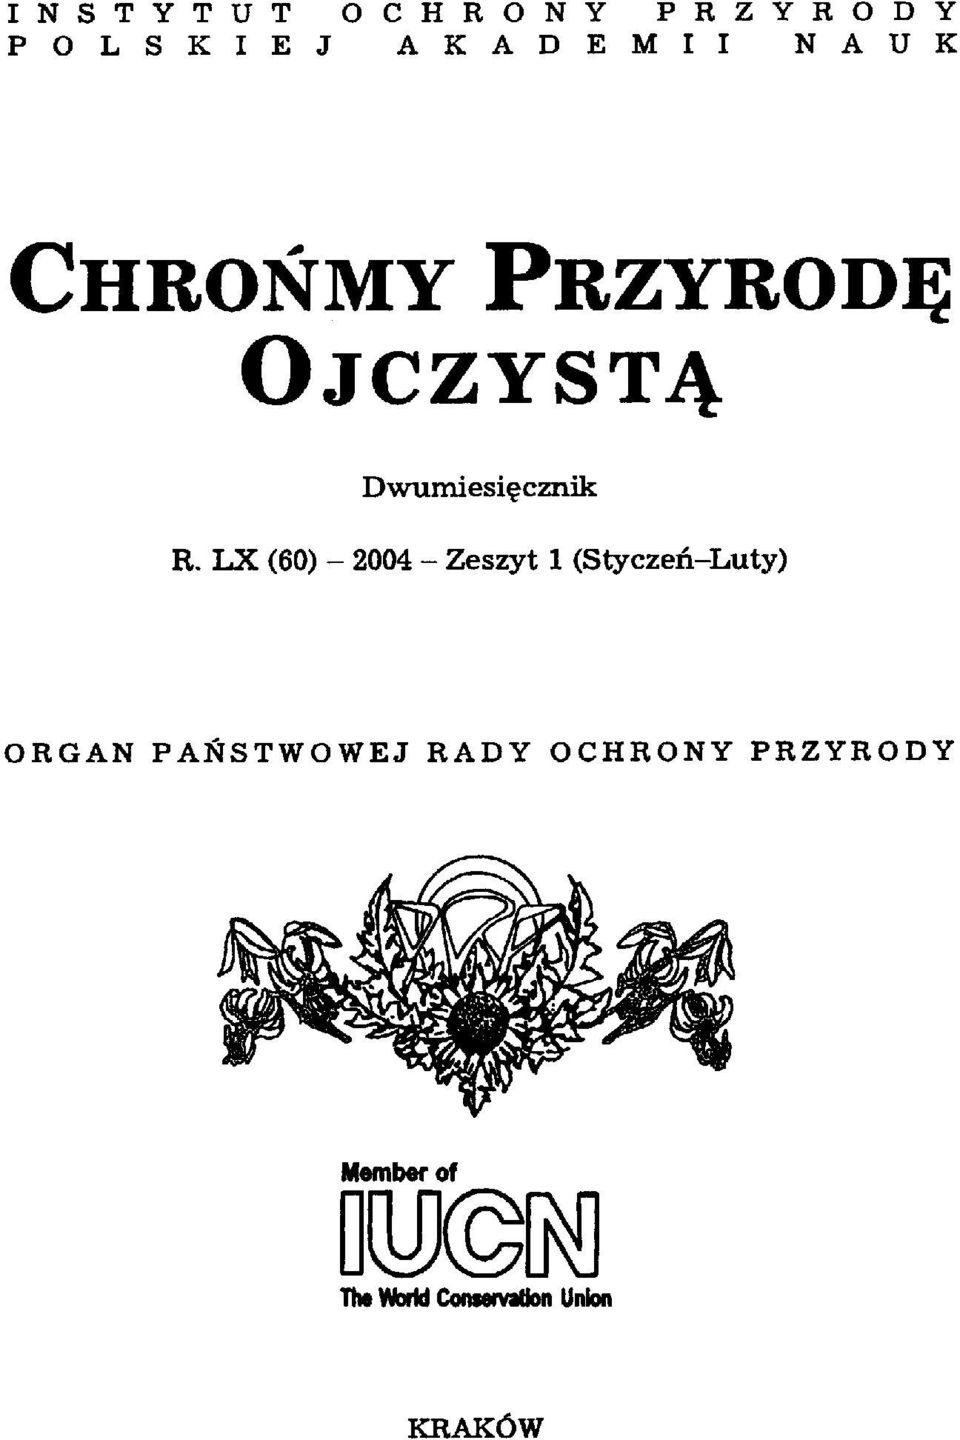 R. LX (60) - 2004 - Zeszyt 1 (Styczeń-Luty) ORGAN PAŃSTWOWEJ